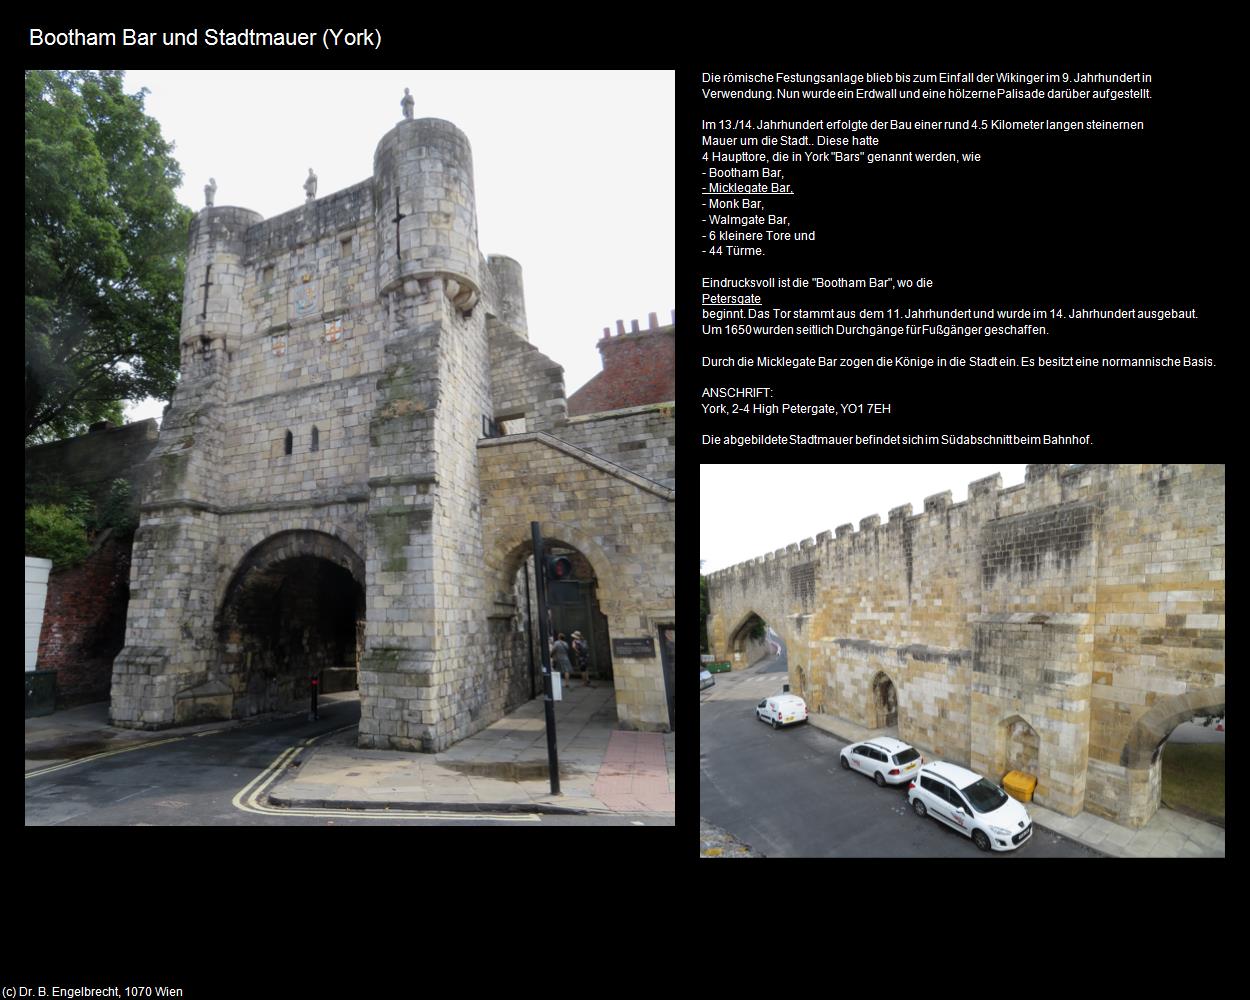 Bootham Bar und Stadtmauer (York, England) in Kulturatlas-ENGLAND und WALES(c)B.Engelbrecht